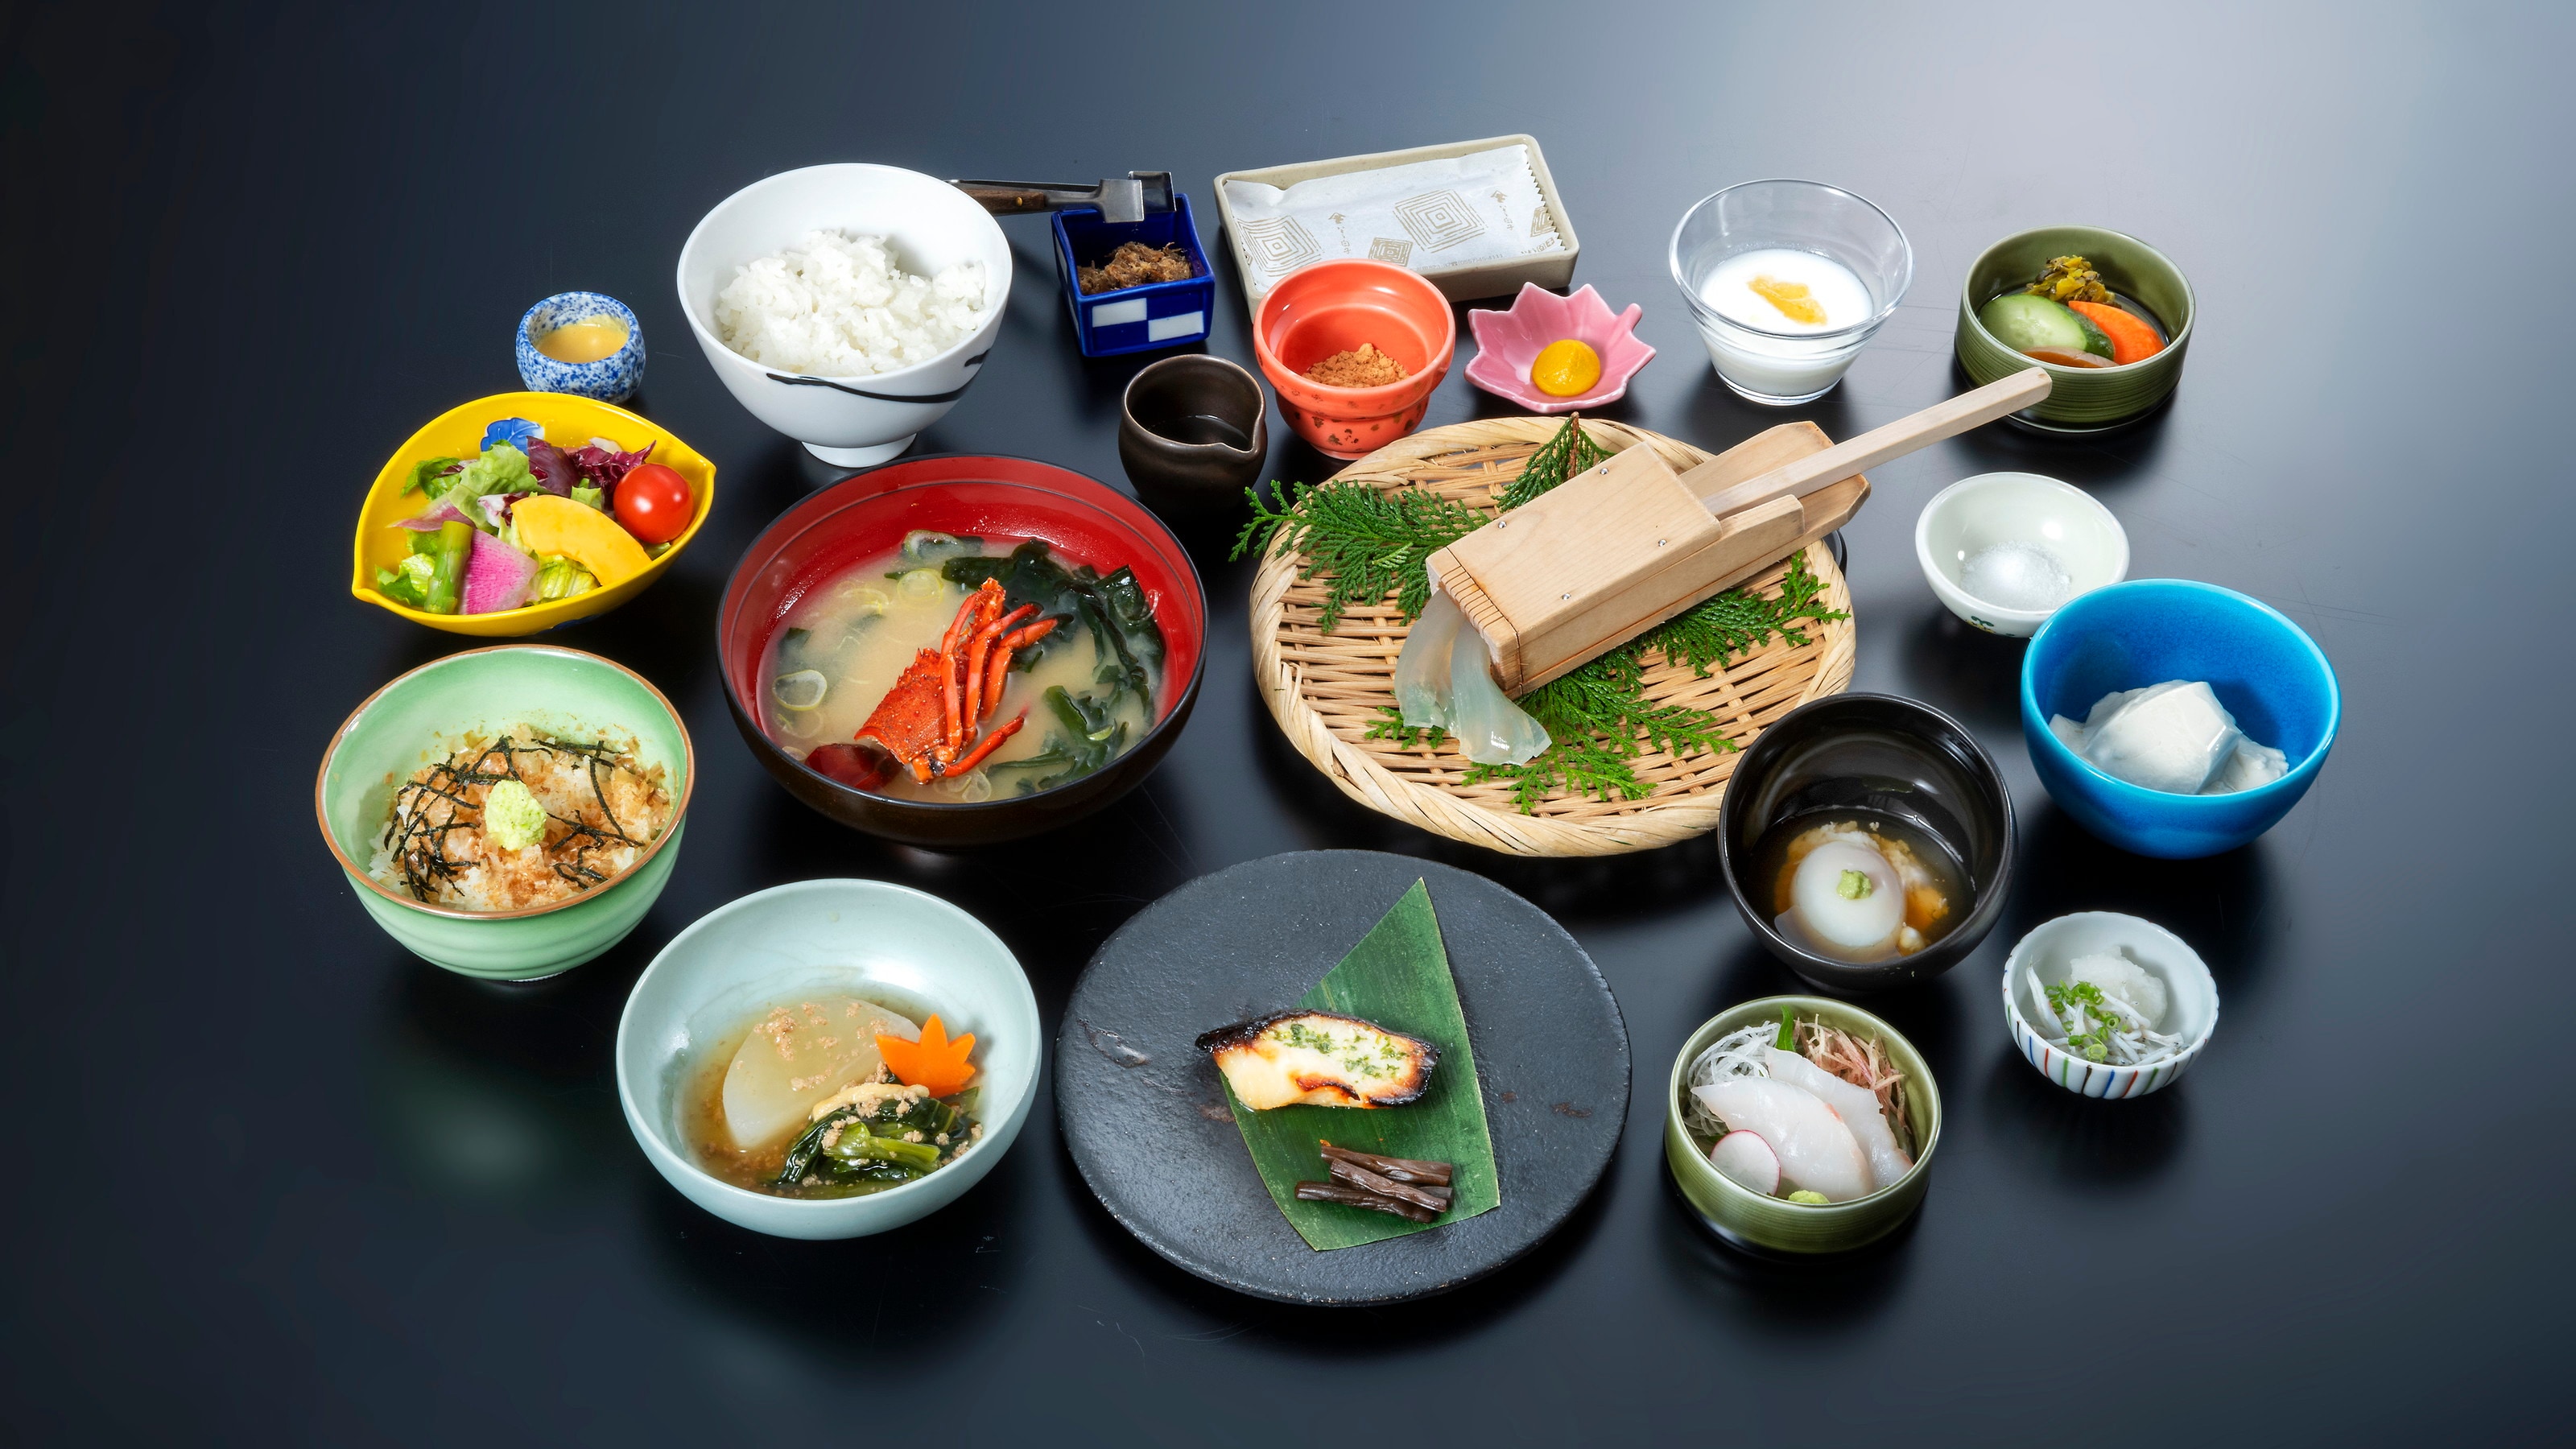 【早餐】包括tokoroten、芥末碗、自製豆腐。自製黃金鯛魚香松最受歡迎